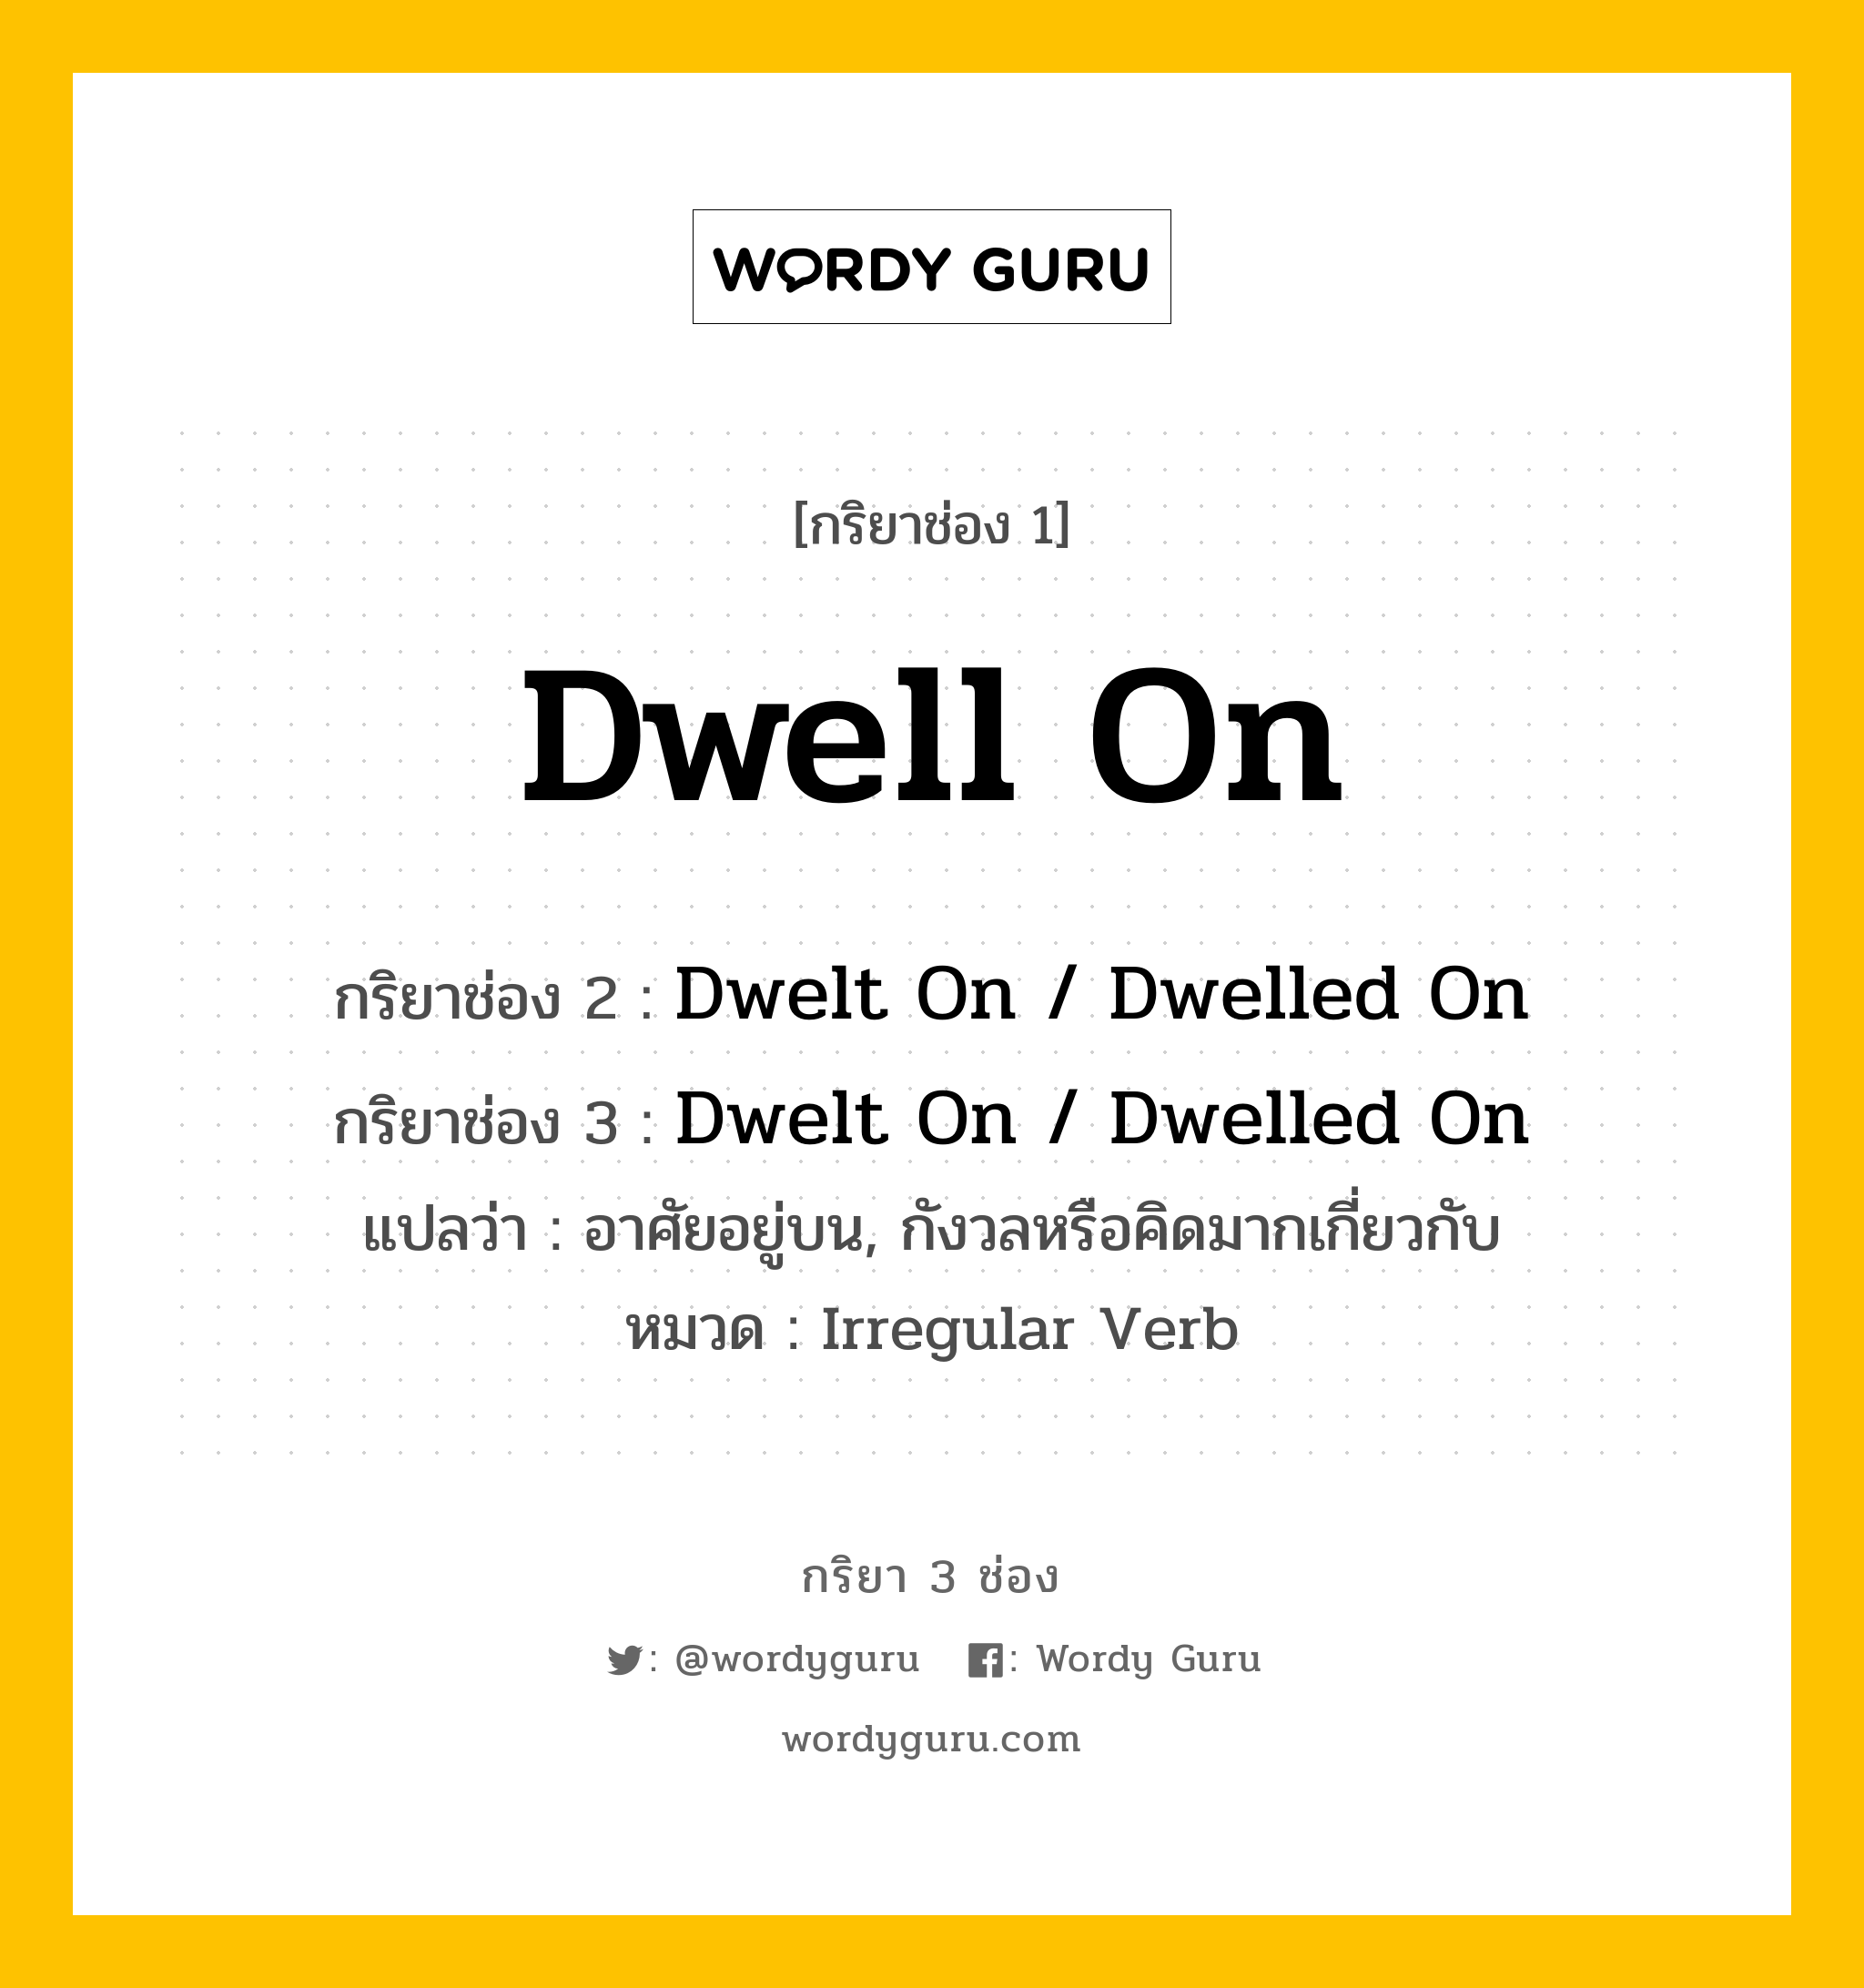 กริยา 3 ช่อง ของ Dwell On คืออะไร? มาดูคำอ่าน คำแปลกันเลย, กริยาช่อง 1 Dwell On กริยาช่อง 2 Dwelt On / Dwelled On กริยาช่อง 3 Dwelt On / Dwelled On แปลว่า อาศัยอยู่บน, กังวลหรือคิดมากเกี่ยวกับ หมวด Irregular Verb หมวด Irregular Verb